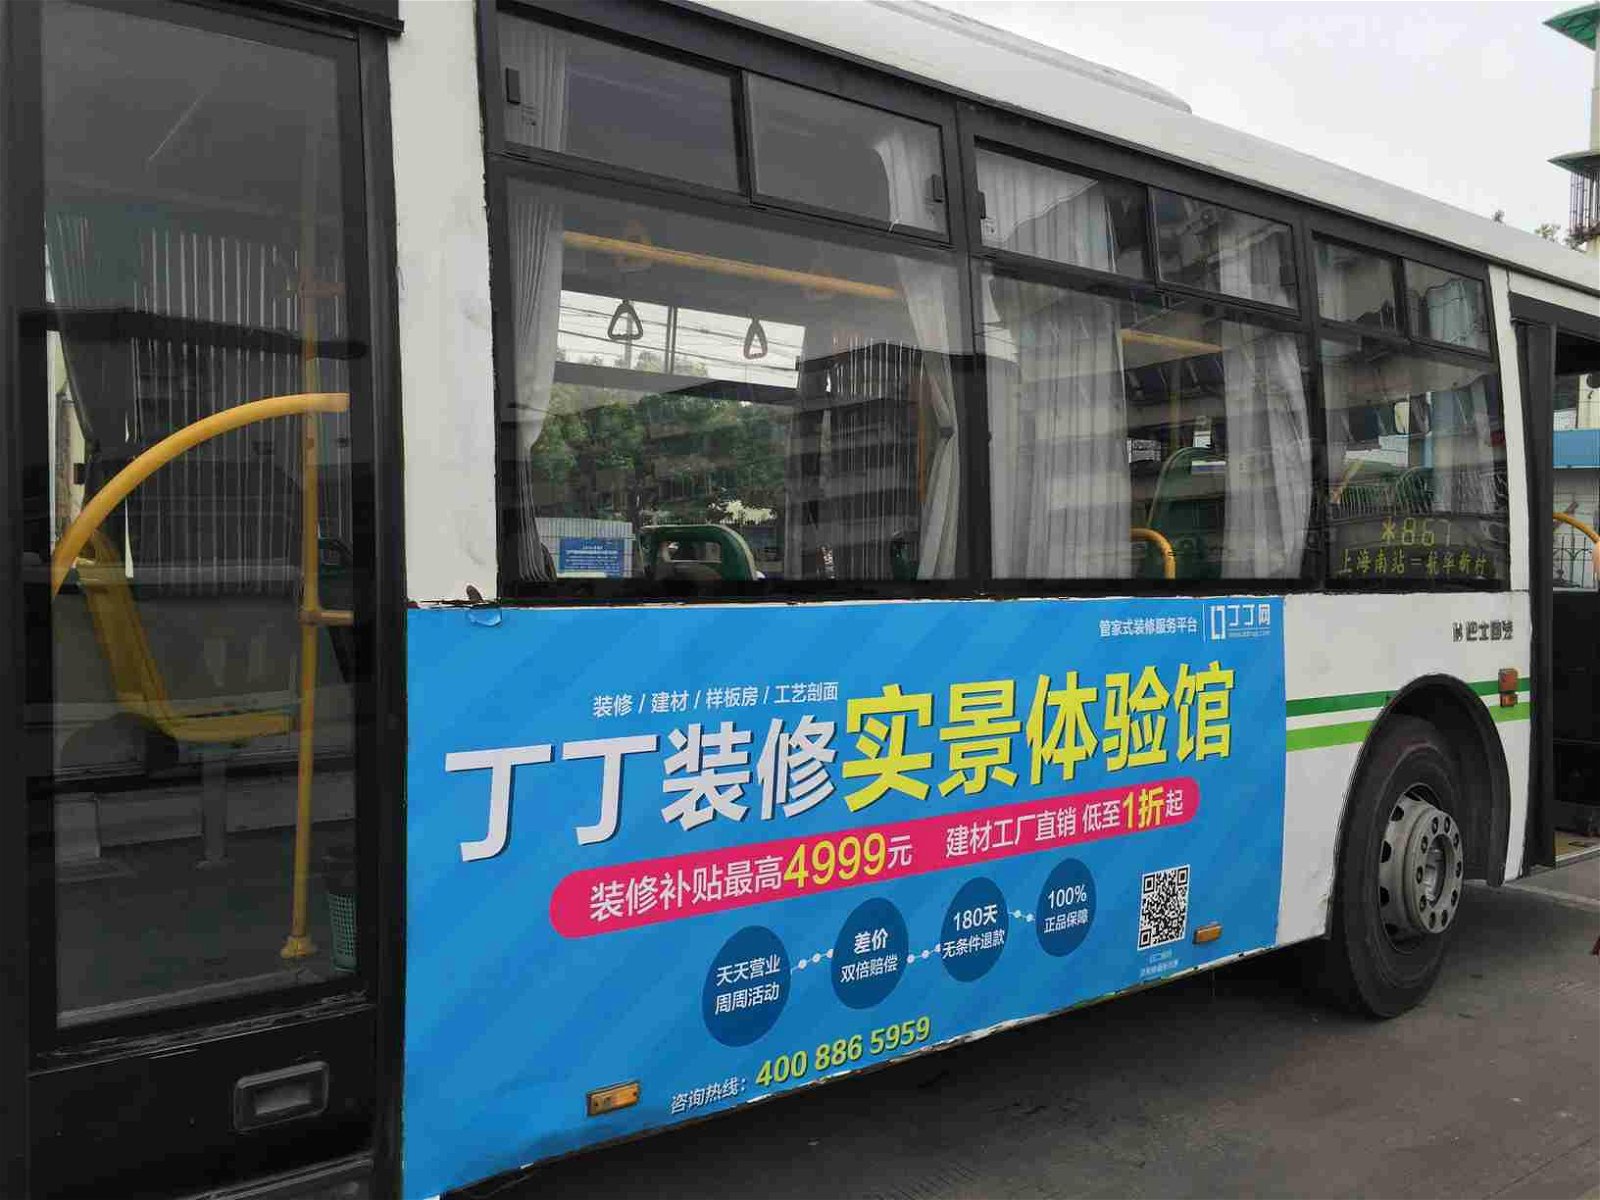 亞瀚傳媒強勢發布上海公交廣告 2